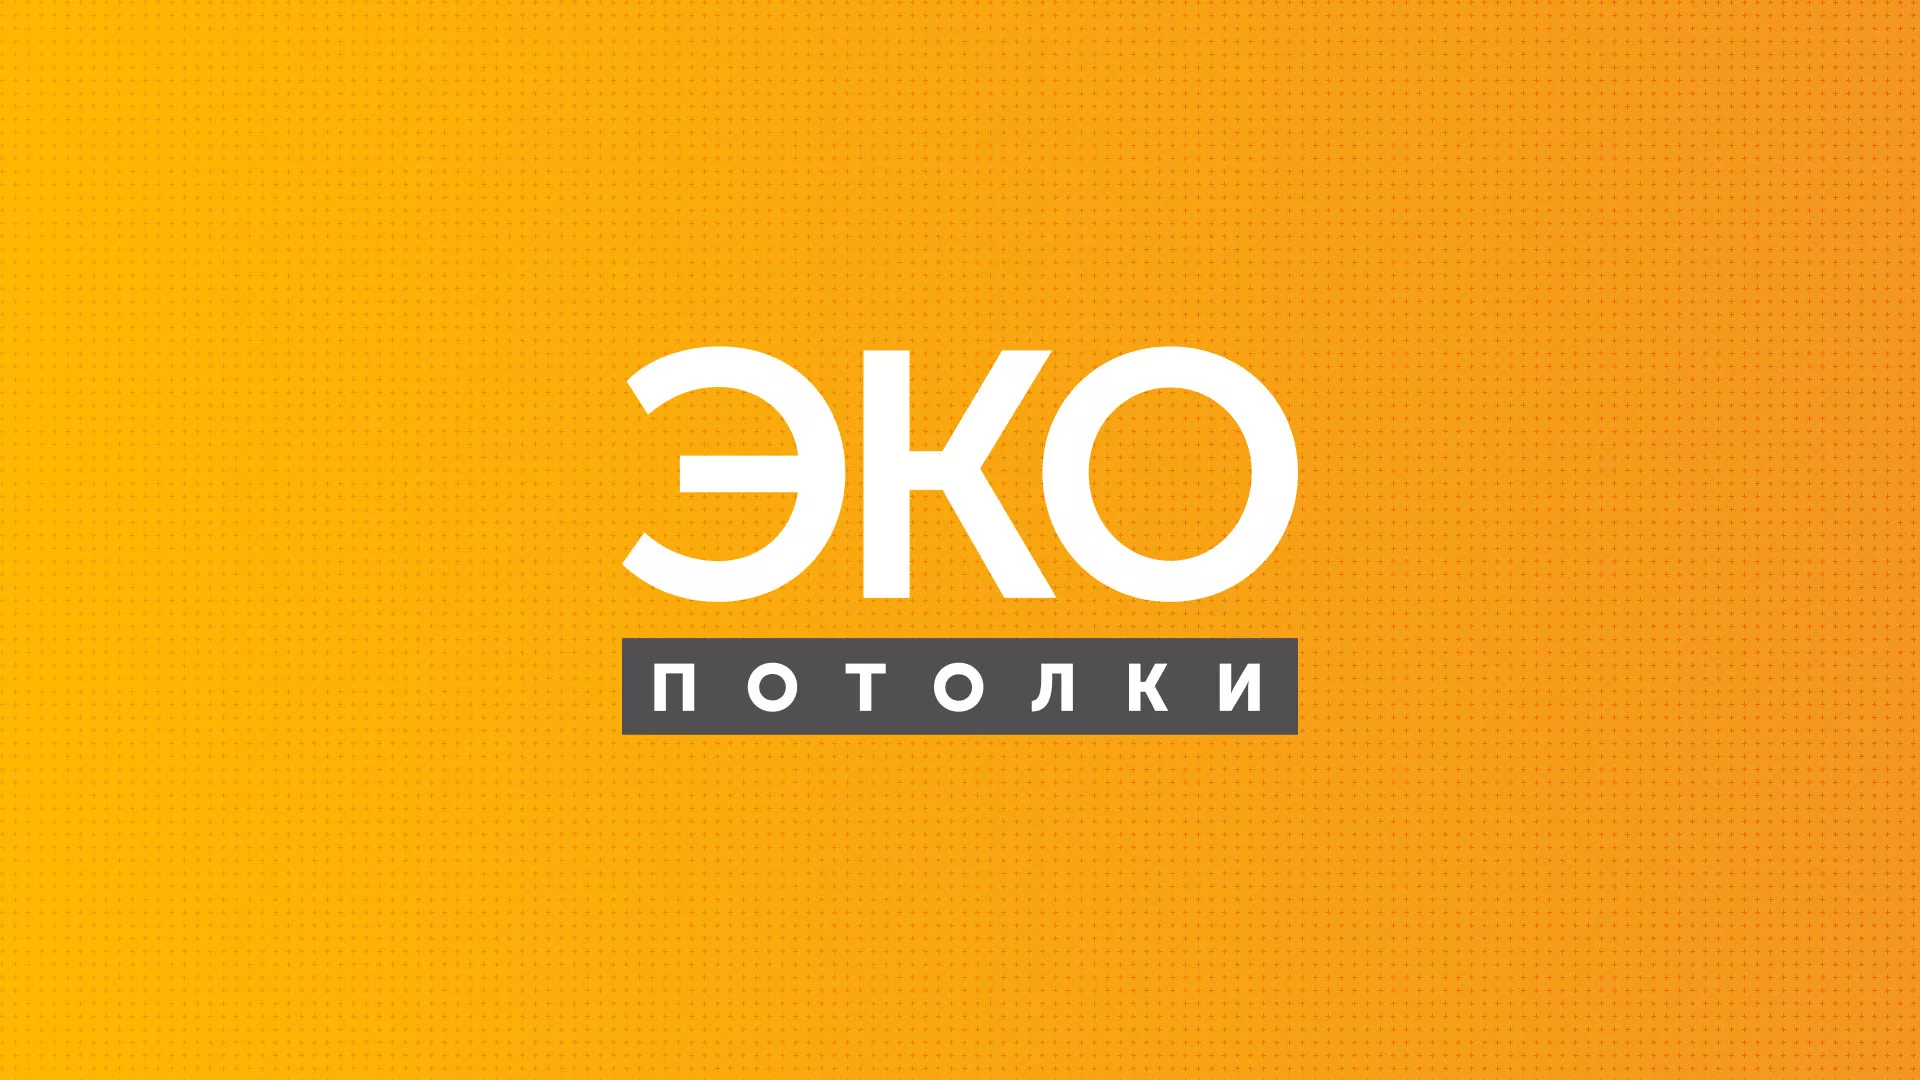 Разработка сайта по натяжным потолкам «Эко Потолки» в Дмитриеве